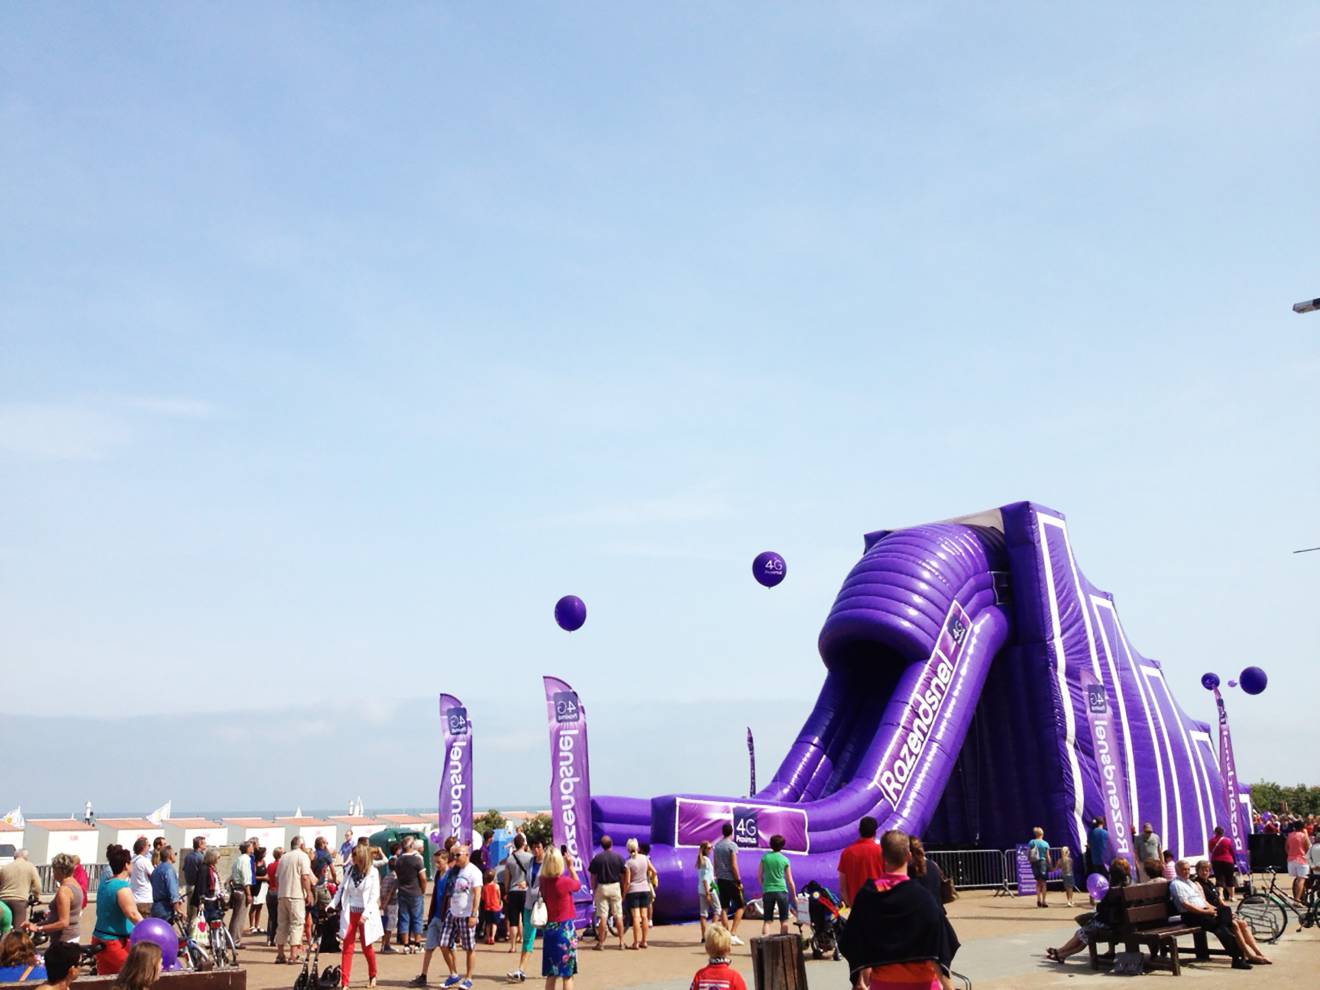 Giant inflatable games Opblaasbare  op maat gemaakte 10 m hoge glijbaan met klimtrap volledig in Proximus kleuren op het strand van Oostende gemaakt voor bureau Demonstr8 X-Treme Creations